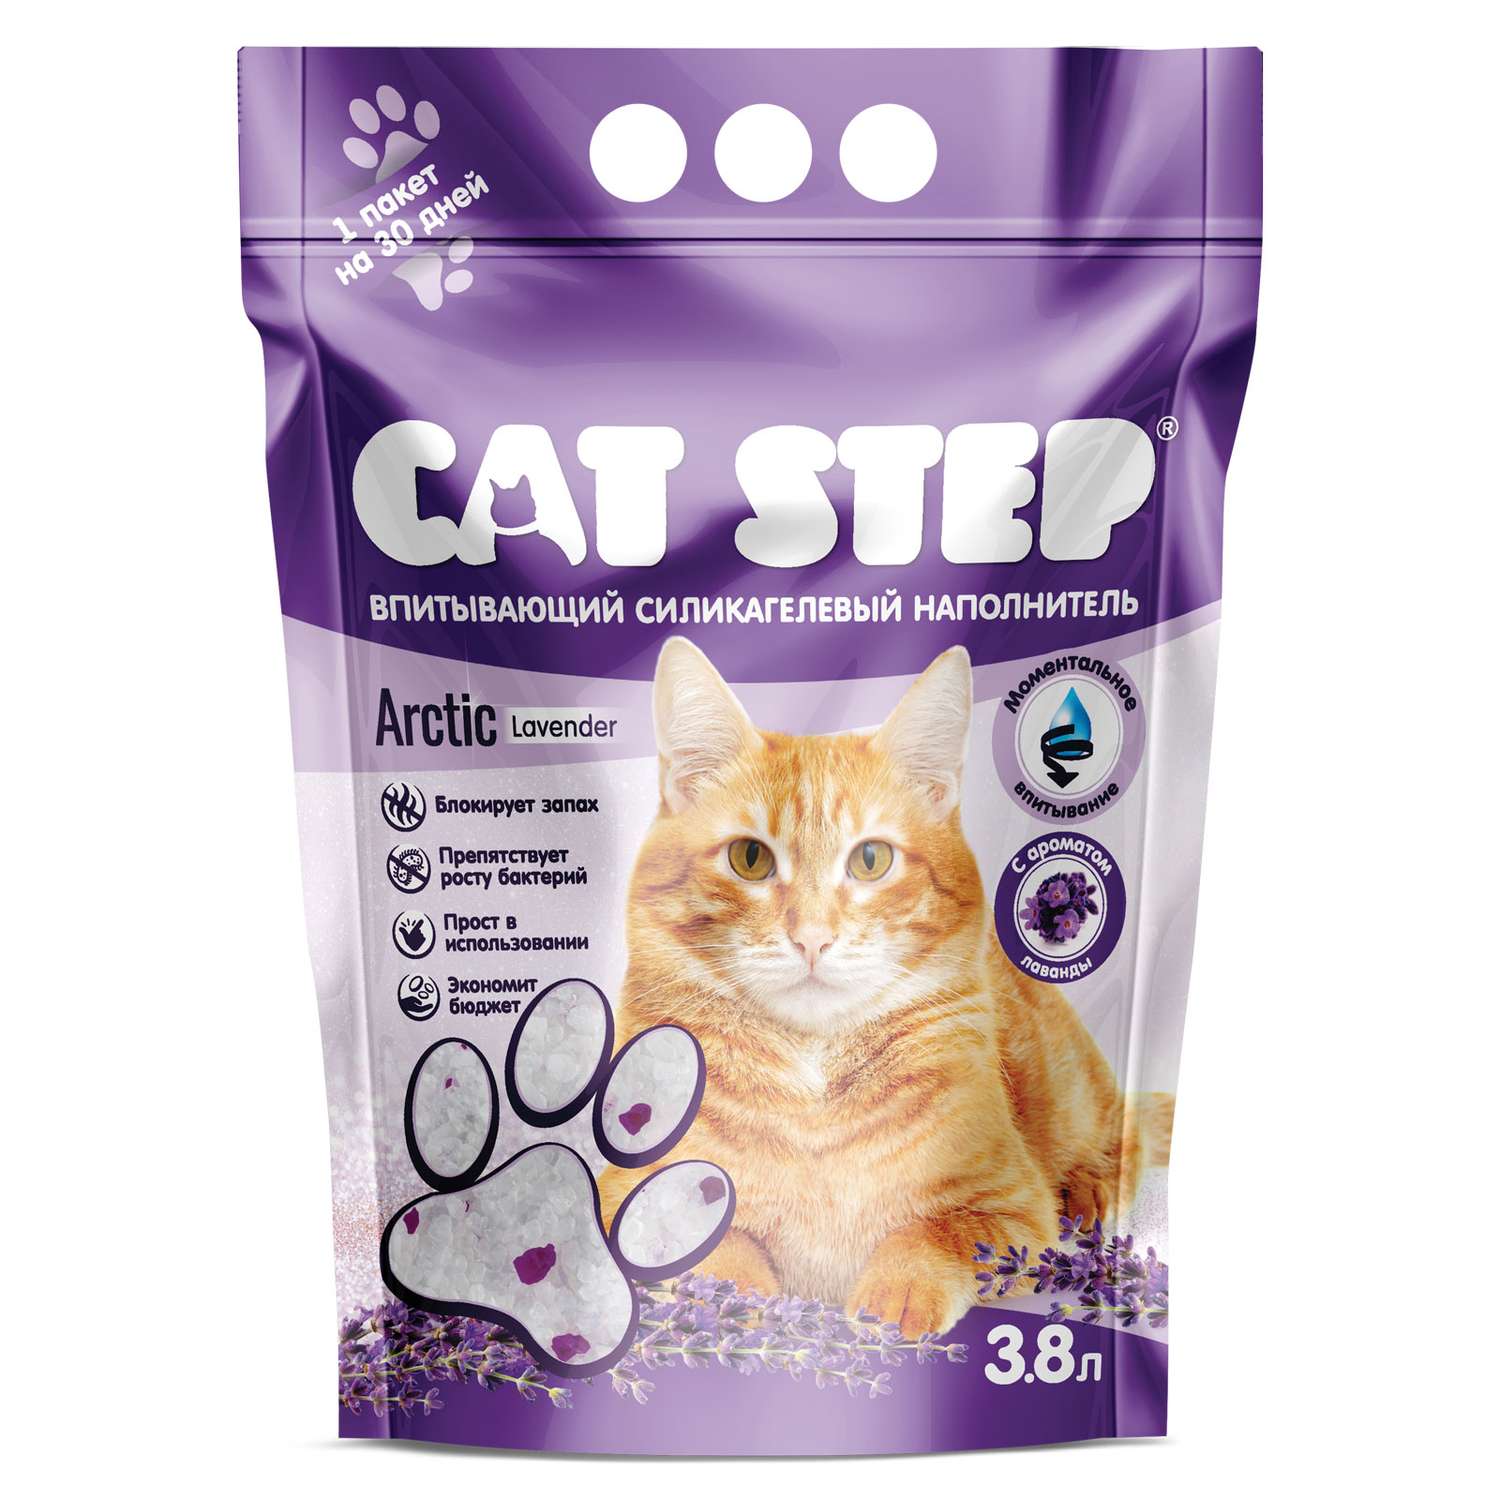 Наполнитель для кошек Cat Step Arctic Lavender впитывающий силикагелевый 3.8л - фото 2